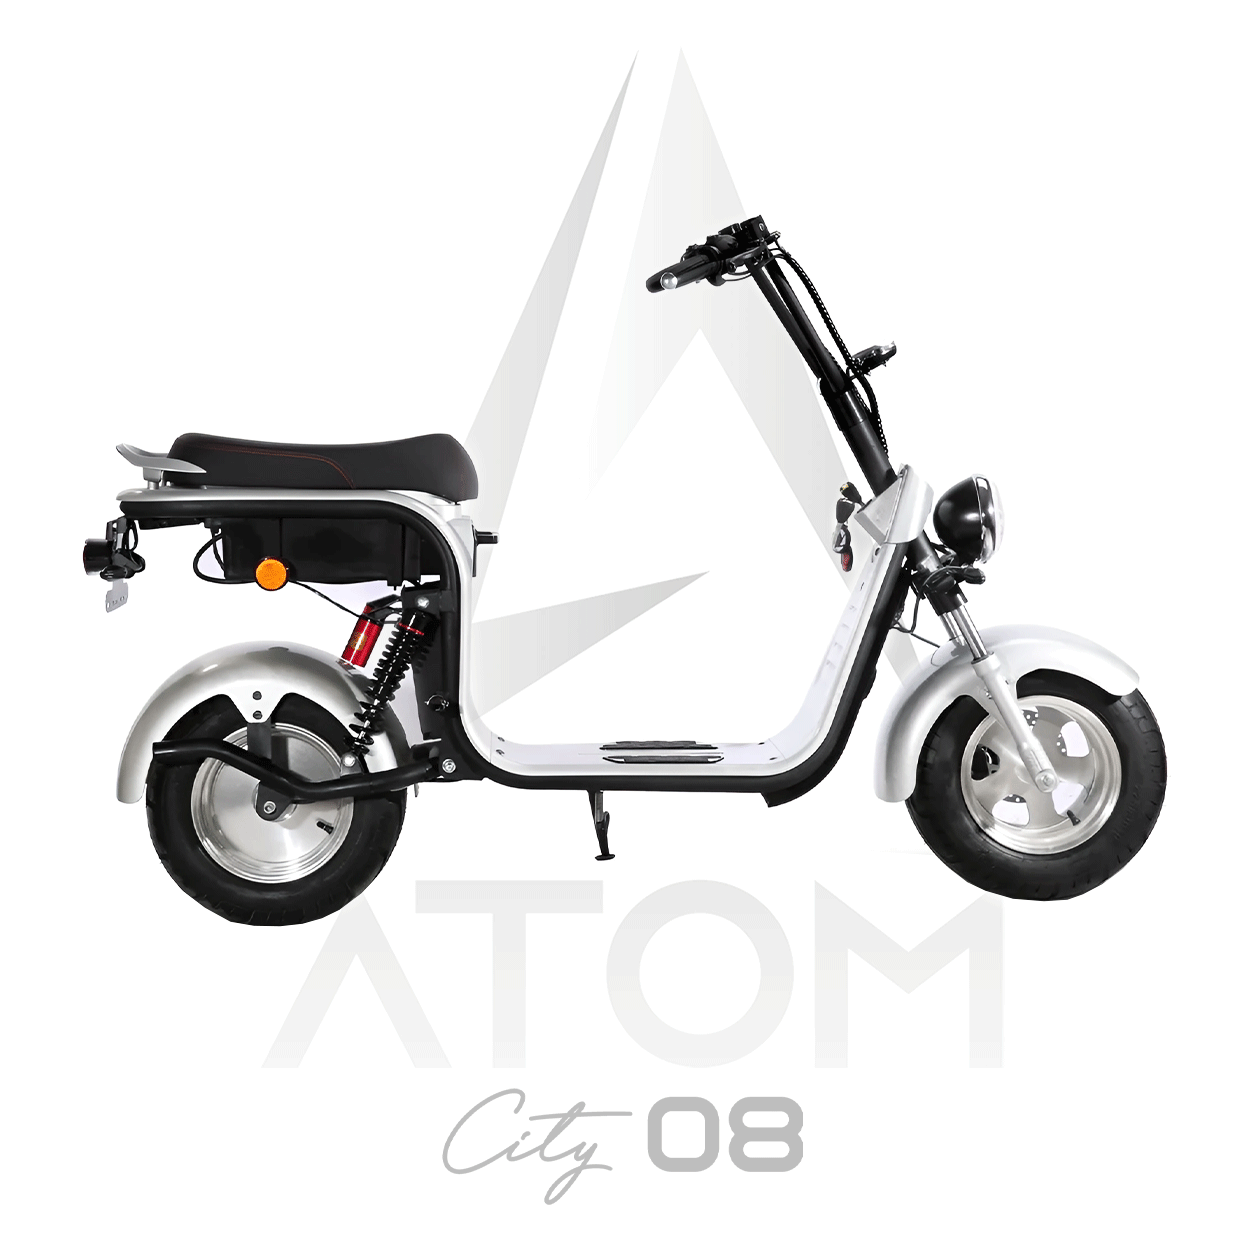 Scooter électrique, Atom City 08 | 2000 W | 50 cc - Atom Motors